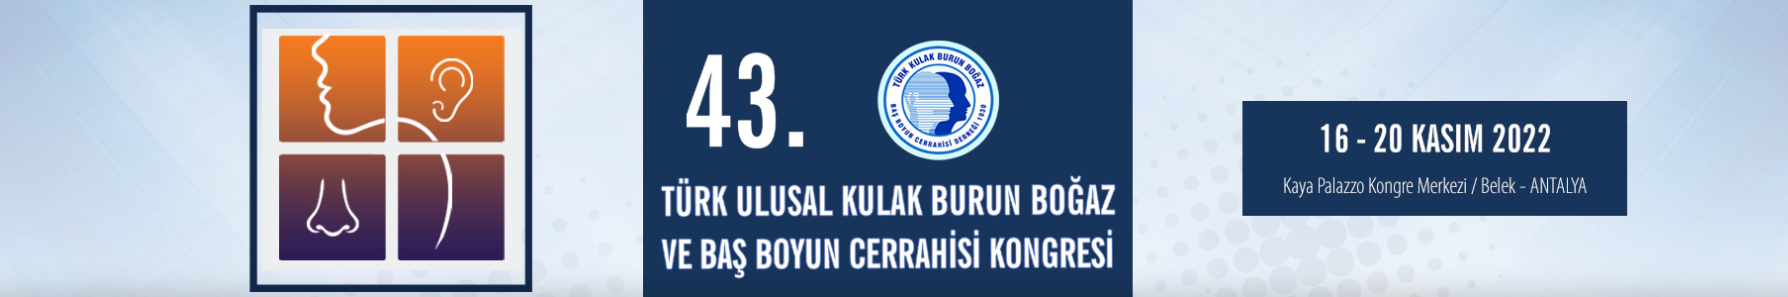 43. Türk Ulusal Kulak Burun Boğaz ve Baş Boyun Cerrahisi Kongresi